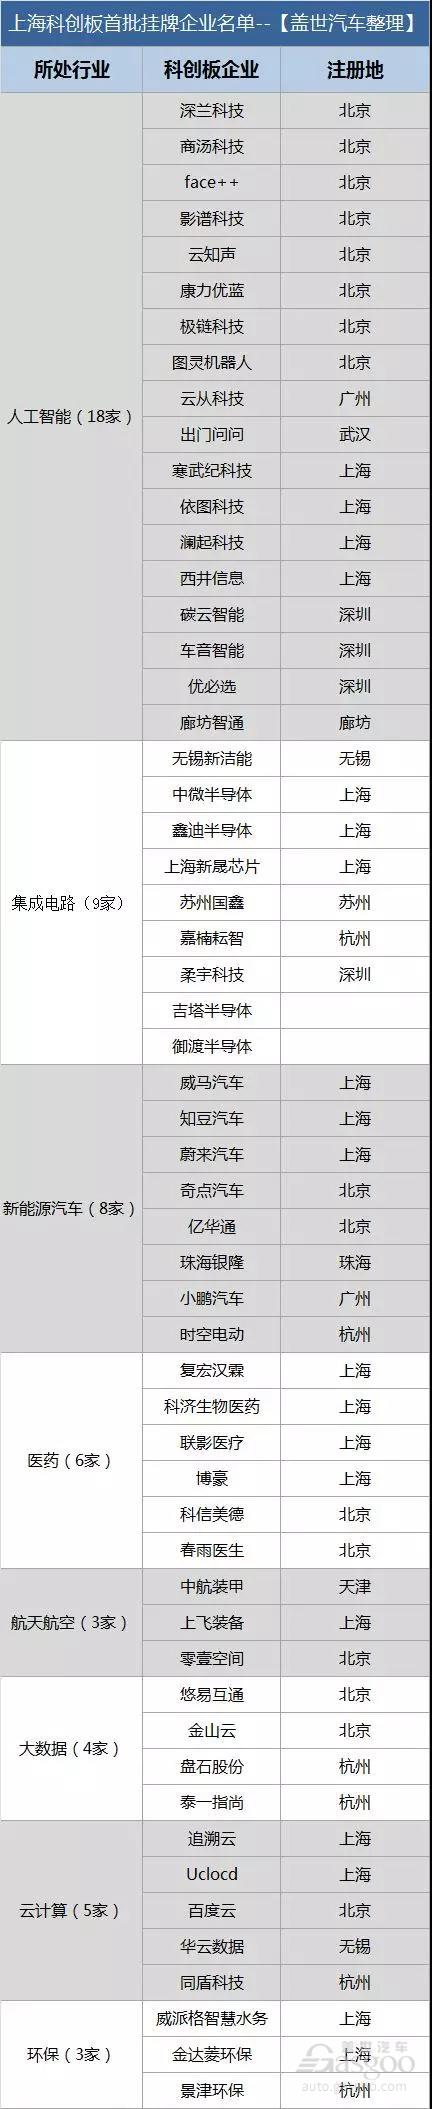 上海科创板首批名单公布 8家新能源车企入围